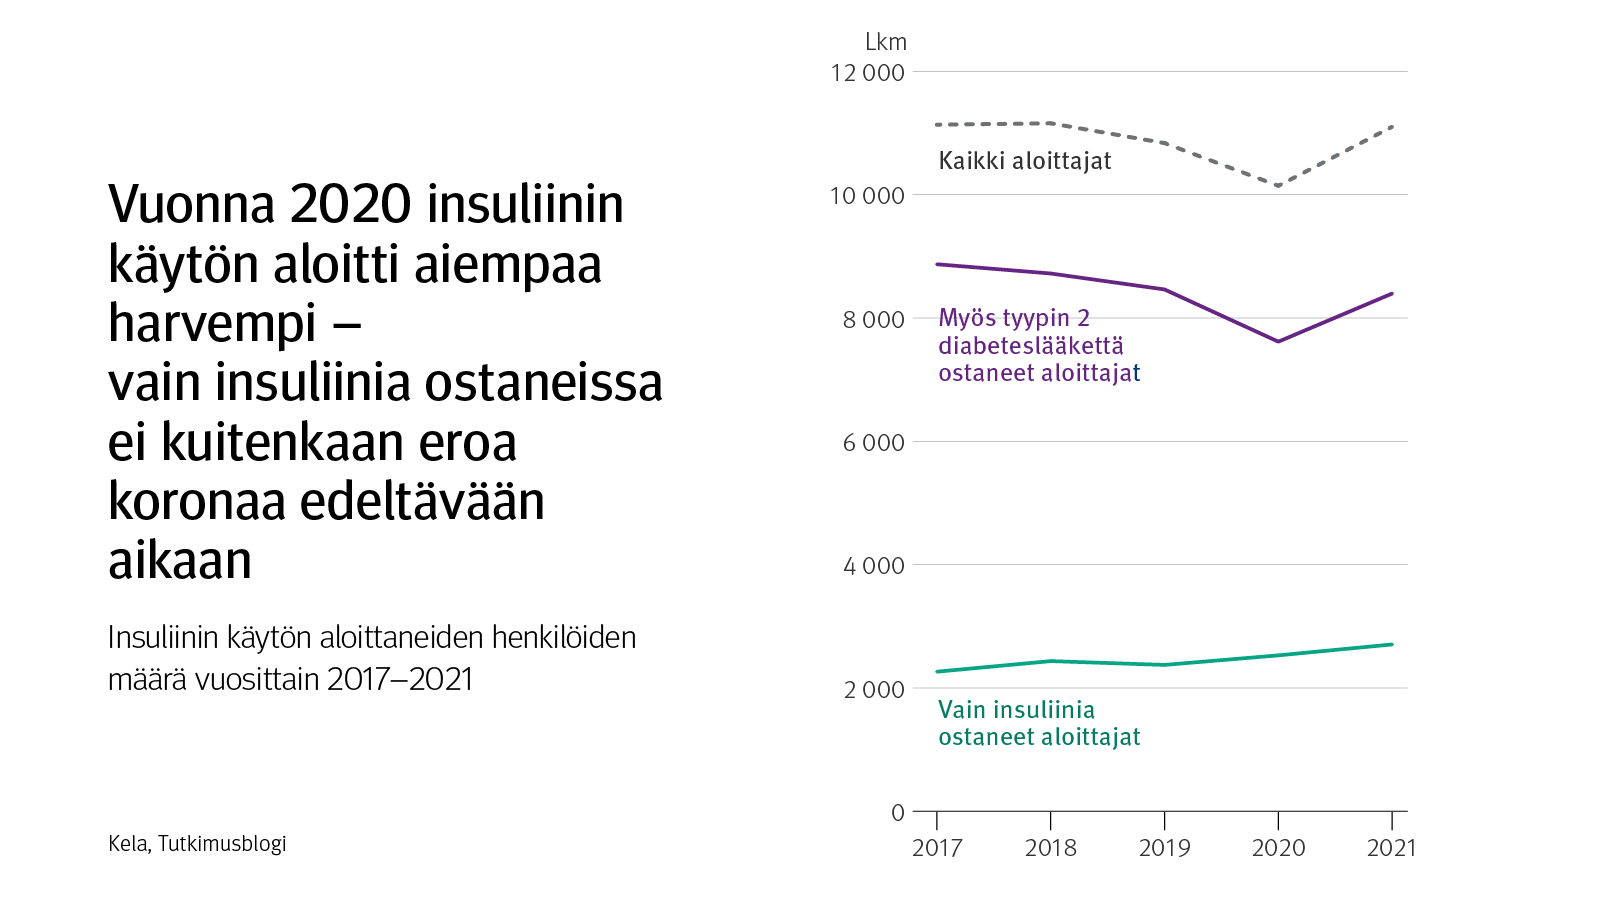 Kuvaaja: insuliinin käytön aloittaneiden henkilöiden määrä vuosittain 2017–2021. Kuvasta näkee, että vuonna 2020 insuliinin käytön aloitti aiempaa harvempi ihminen. Vain insuliinia ostaneissa ei näkynyt eroa koronaa edeltävään aikaan, vaan muutos kohdistus sellaisiin ihmisiin, jotka olivat myös aloittaneet tyypin 2 diabeteslääkkeen.